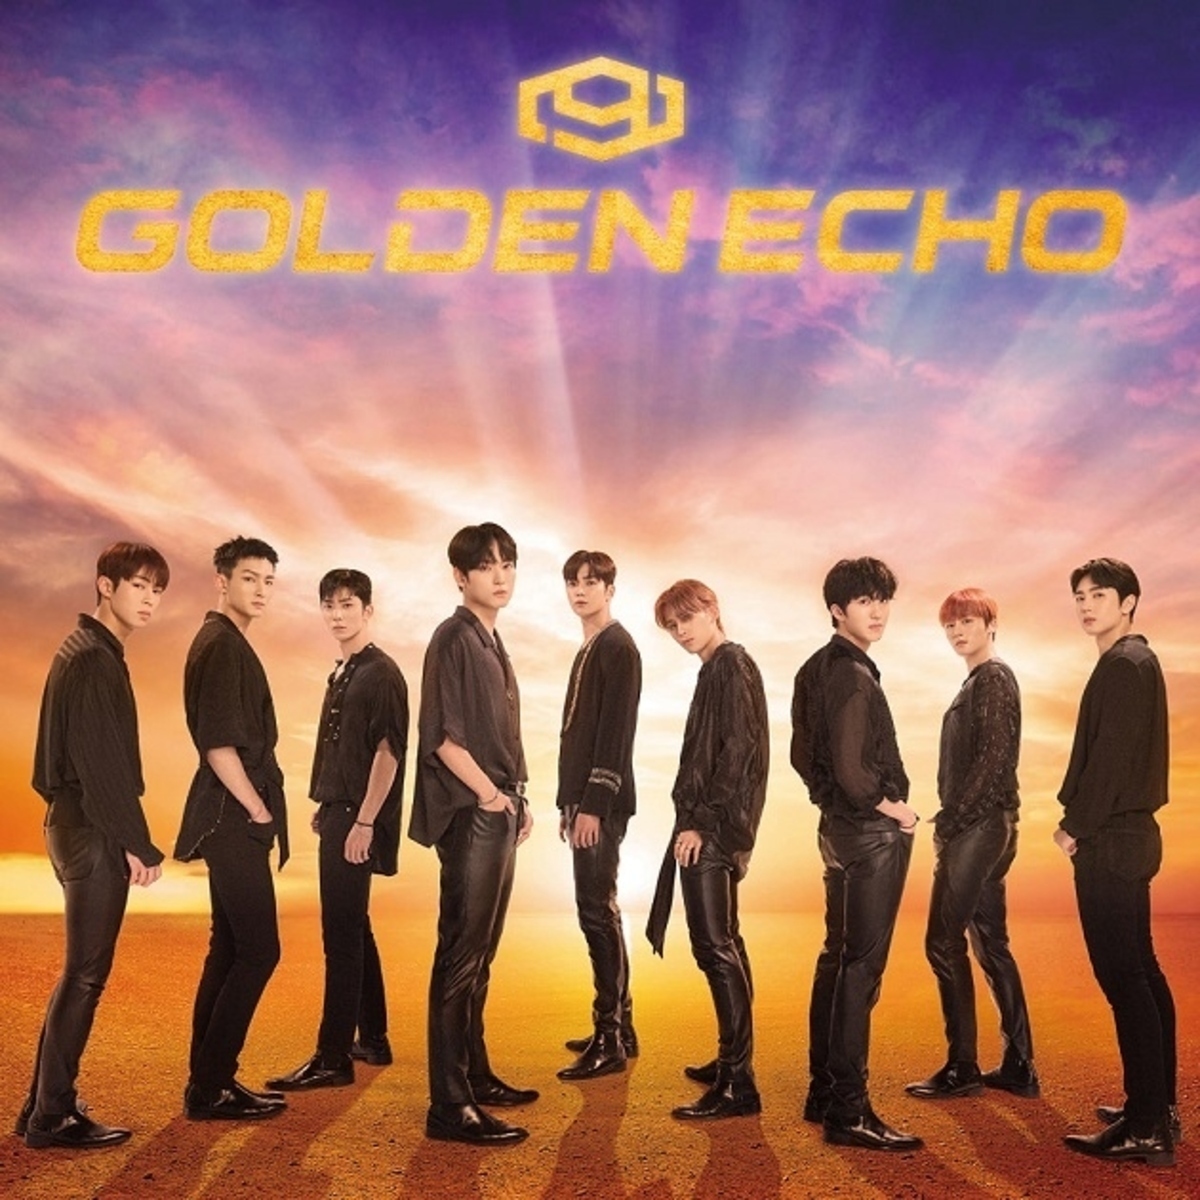 SF9、日本3rdアルバム「GOLDEN ECHO」のオンラインリリースイベントが